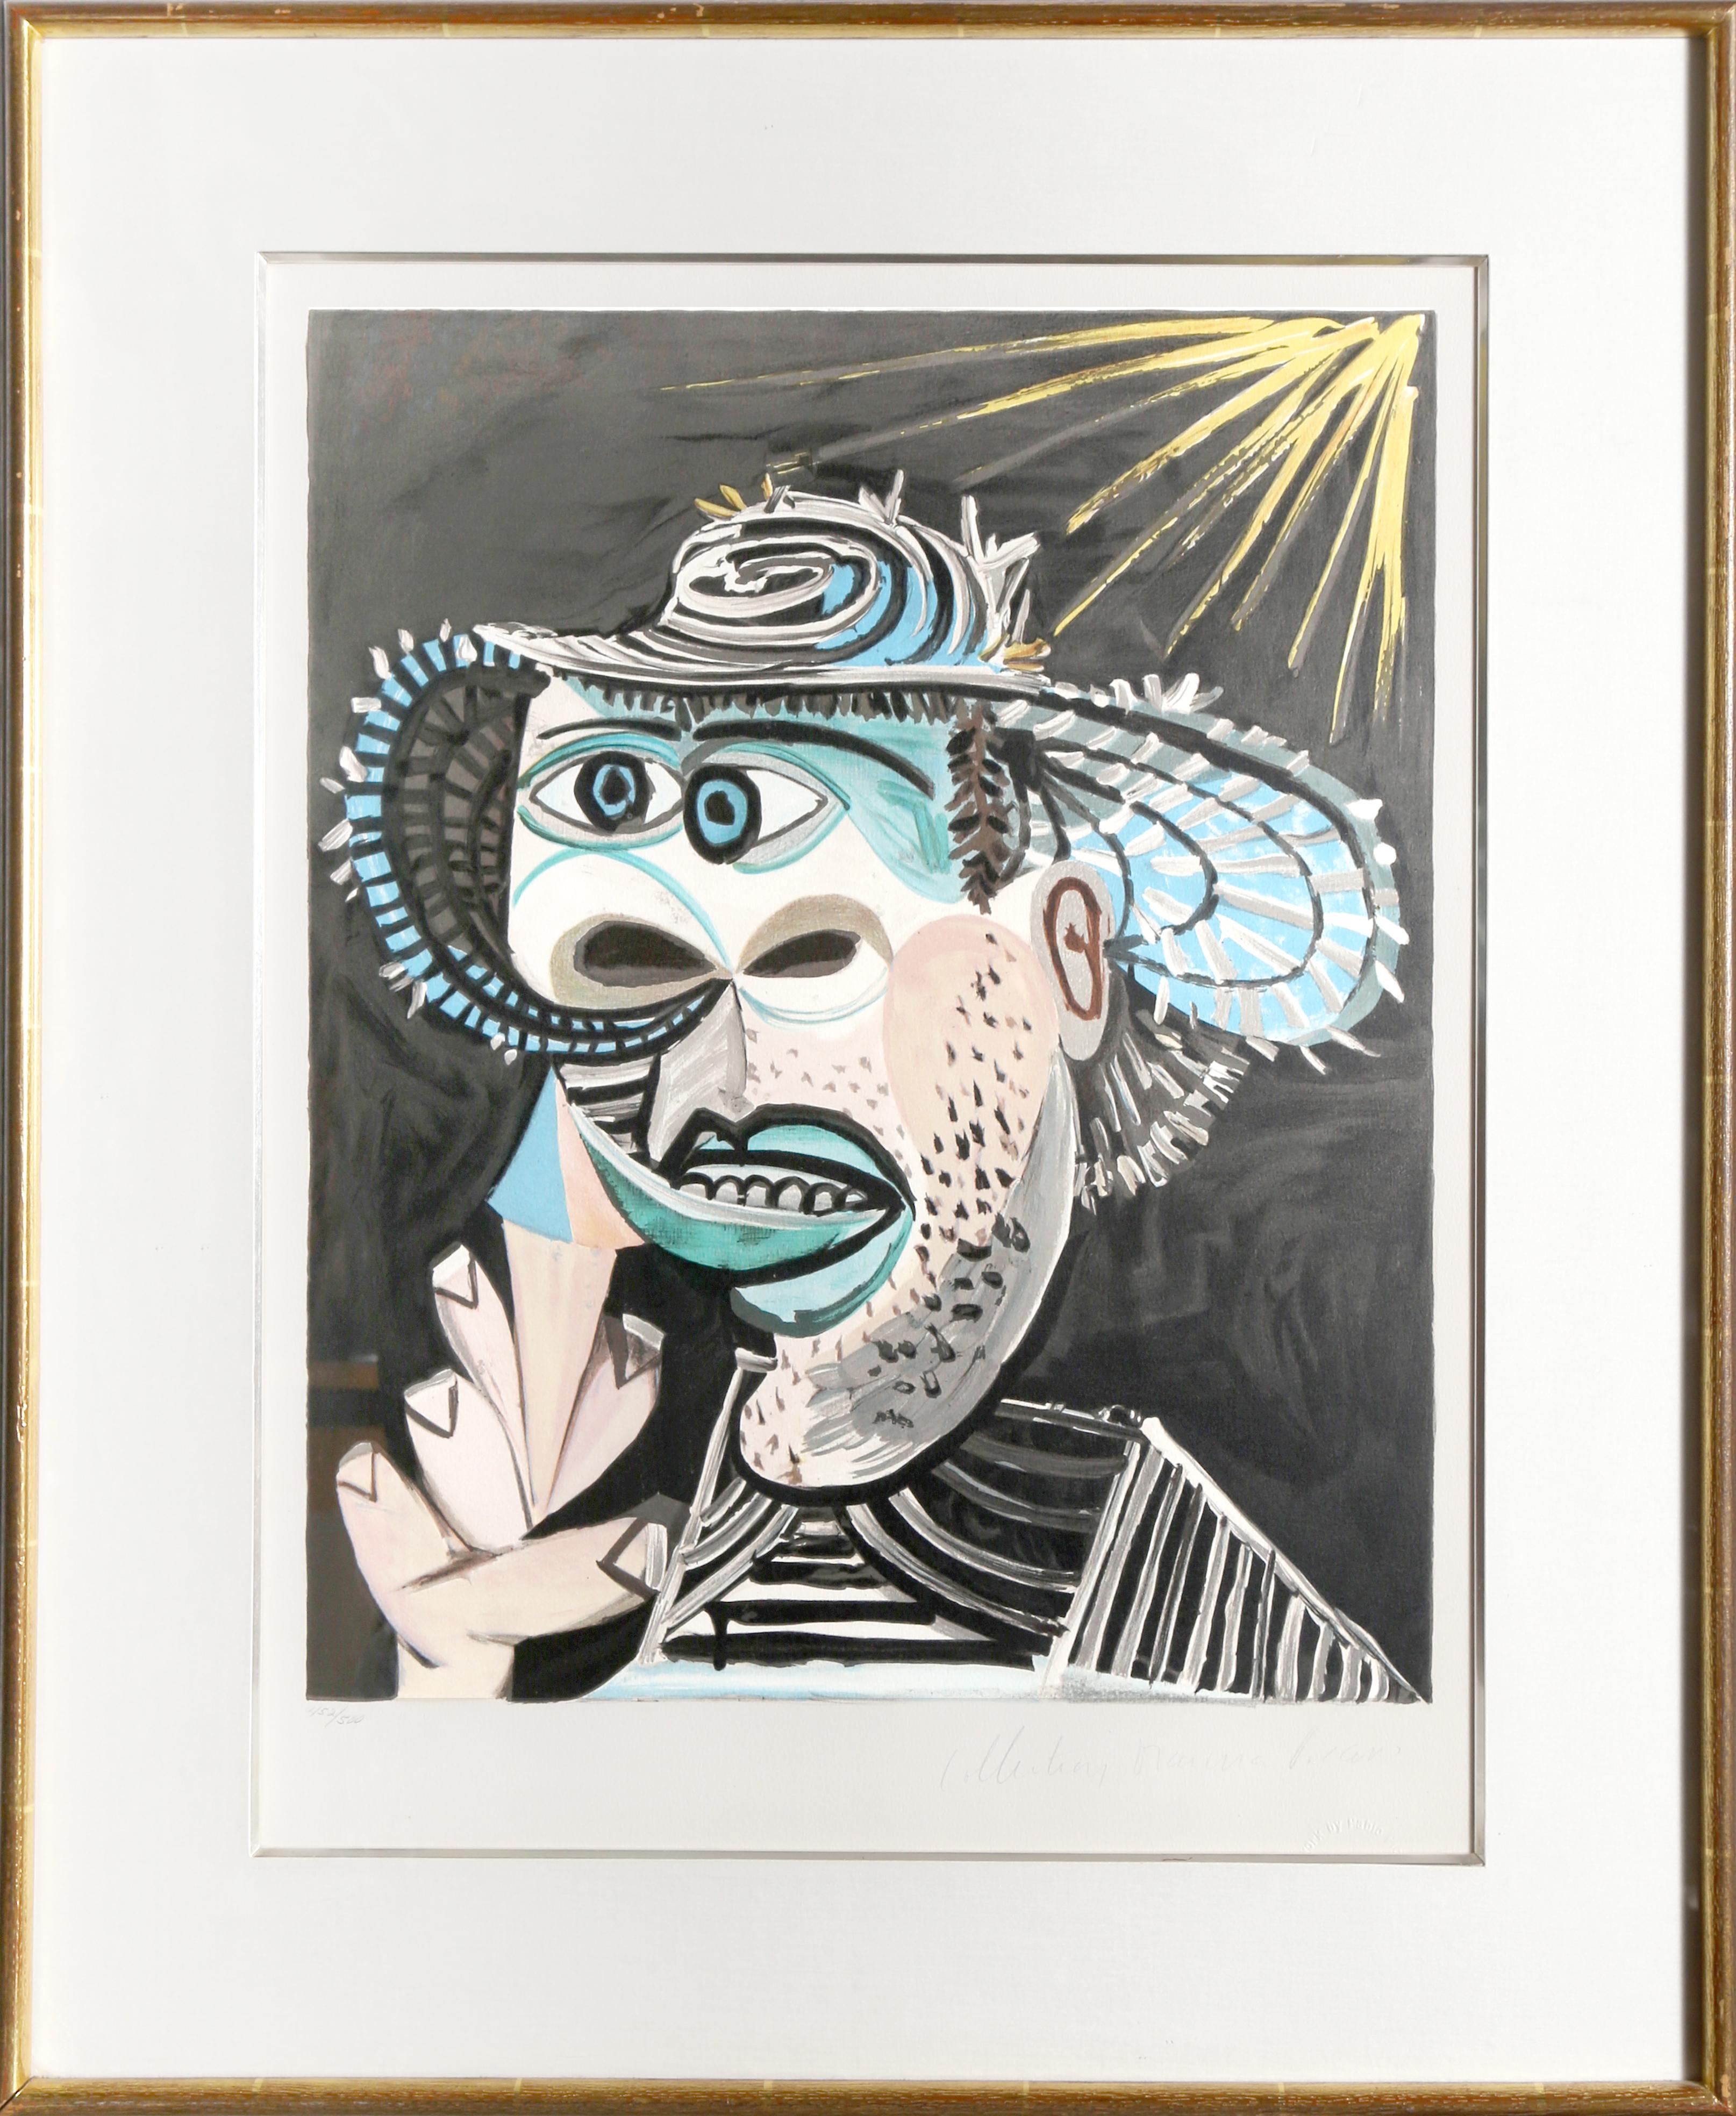 Lithographie de la Collection S de Marina Picasso d'après le tableau de Pablo Picasso "Homme Au Cornet".  La peinture originale a été achevée en 1938. Dans les années 1970, après la mort de Picasso, Marina Picasso, sa petite-fille, a autorisé la